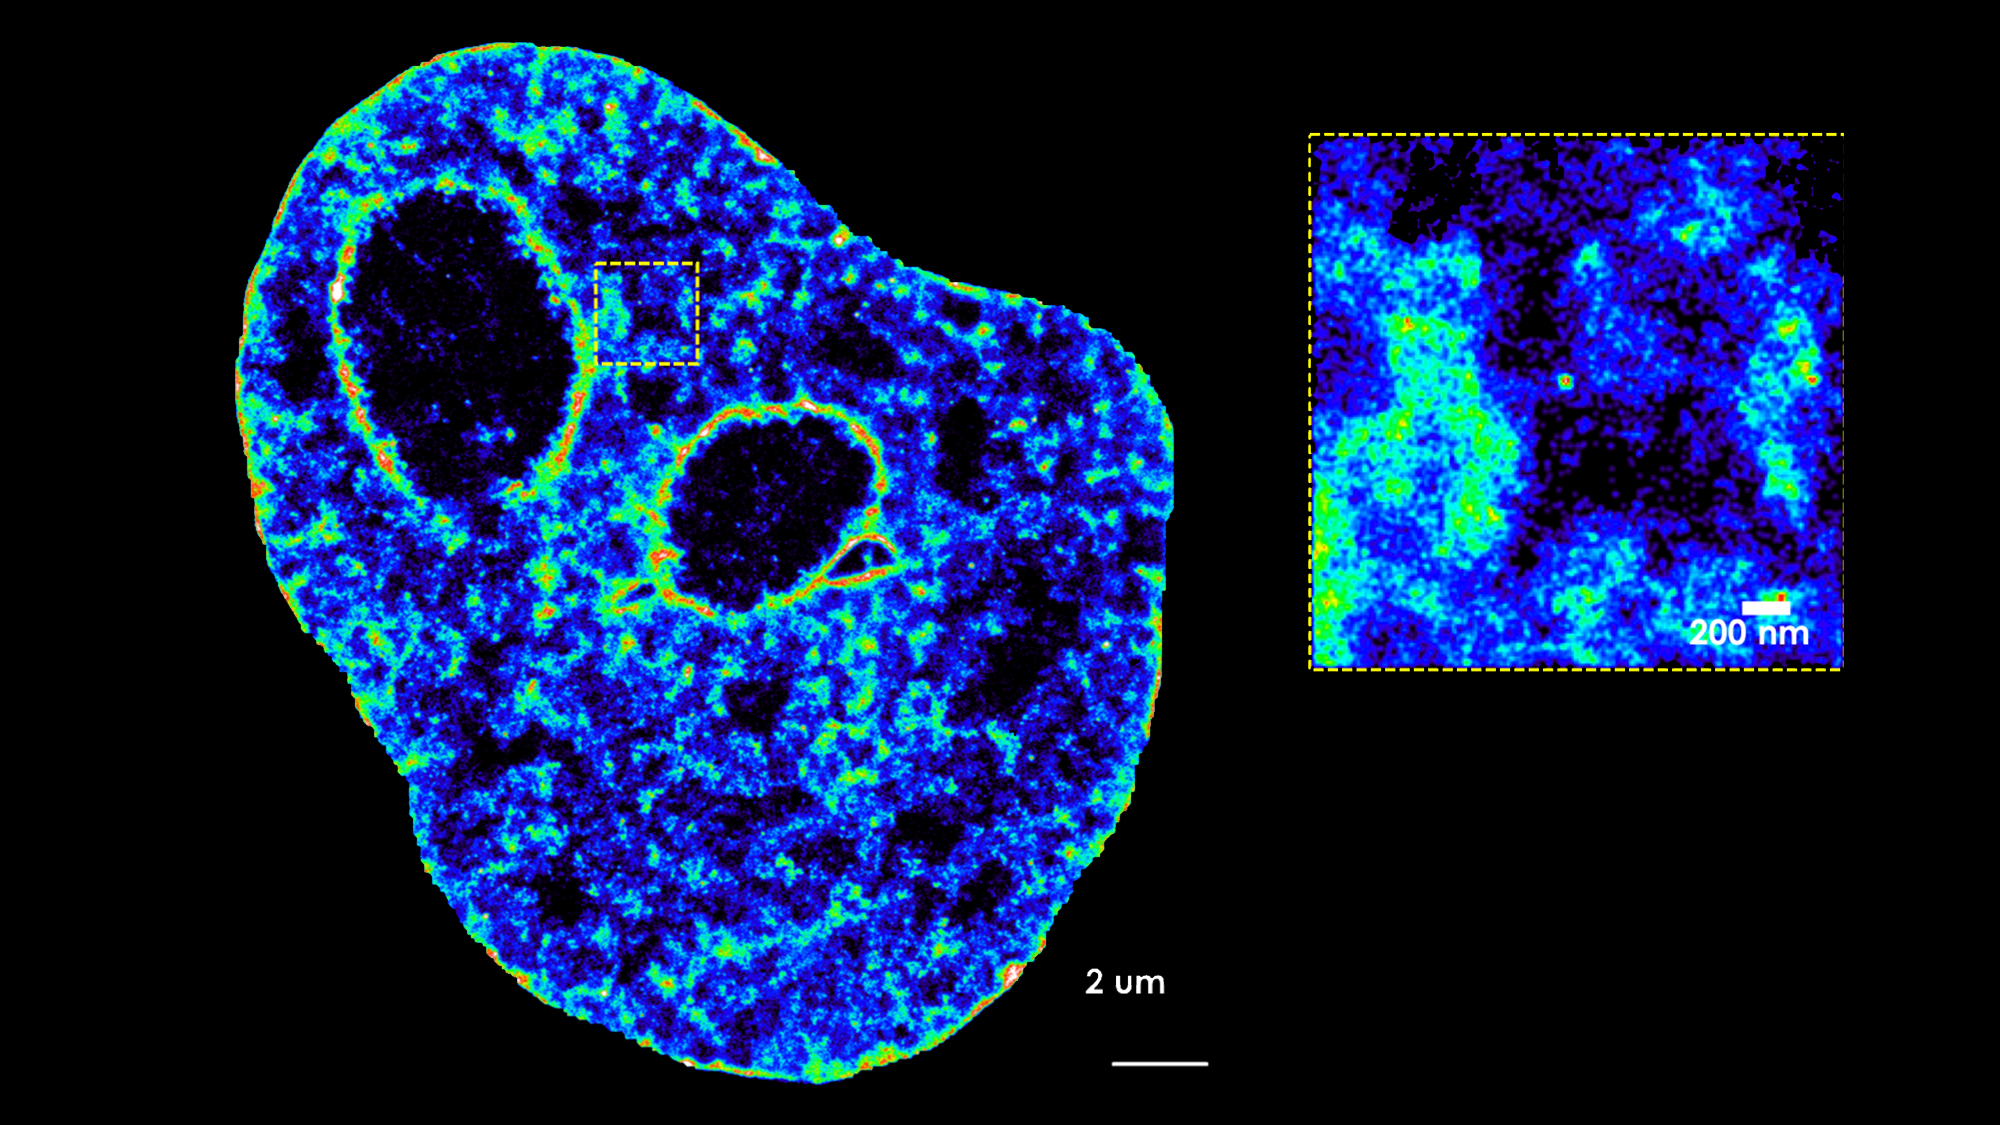 imagen del núcleo de una célula obtenida por microscopía convencional y ampliación de un fragmento hecho con microsocòpia de última generación.